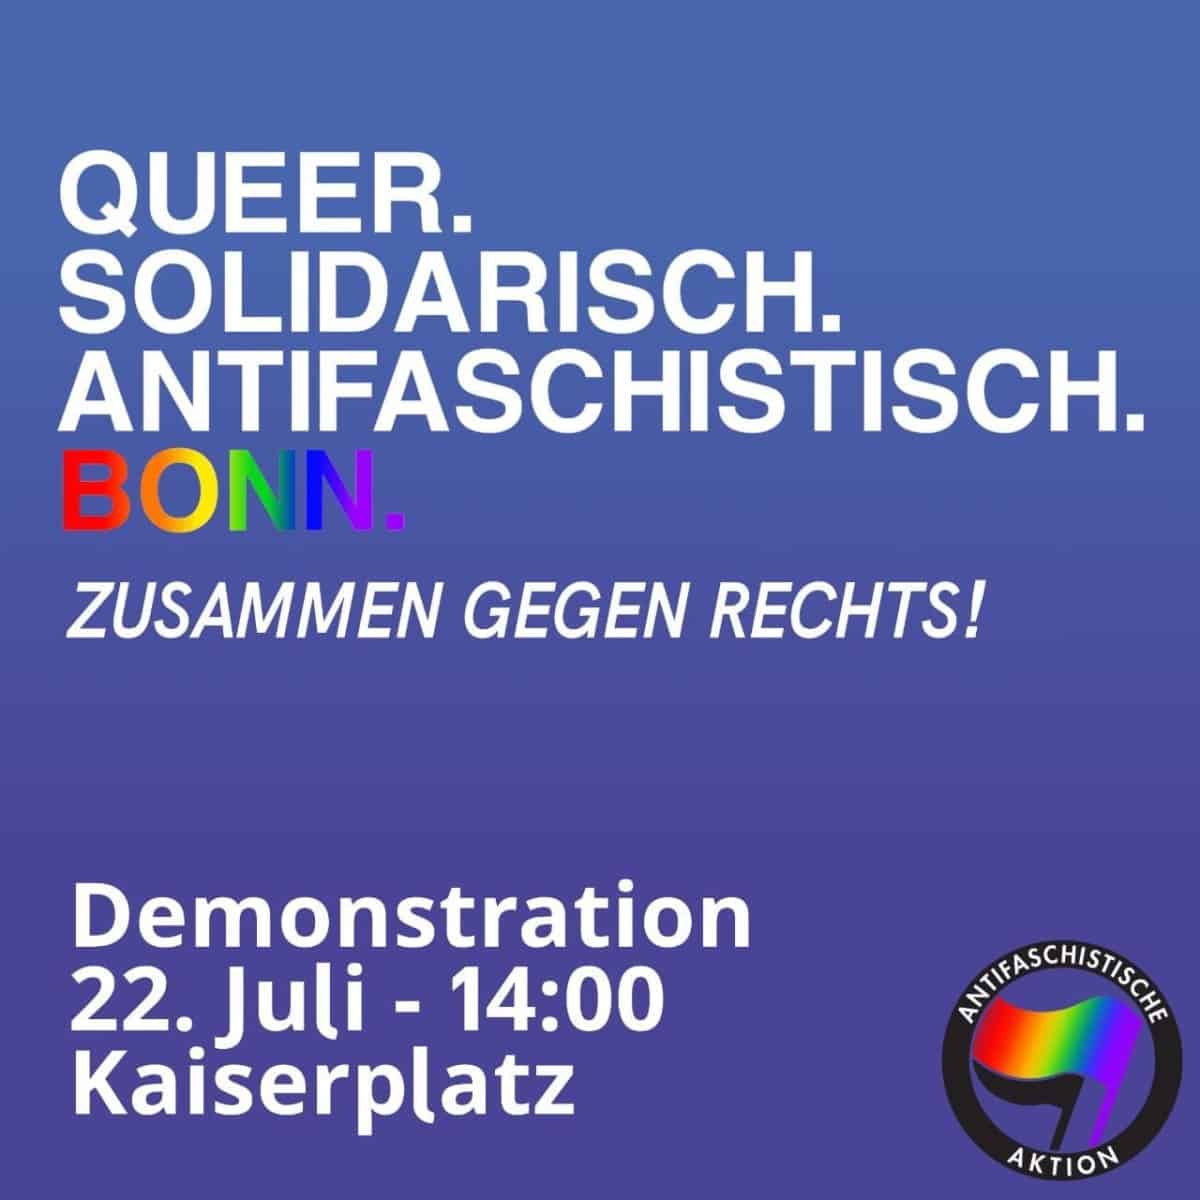 Queer solidarisch antifaschistisch Bonn - Zusammen gegen Rechts - Demonstation 22.7. - 14:00 Kaiserplatz